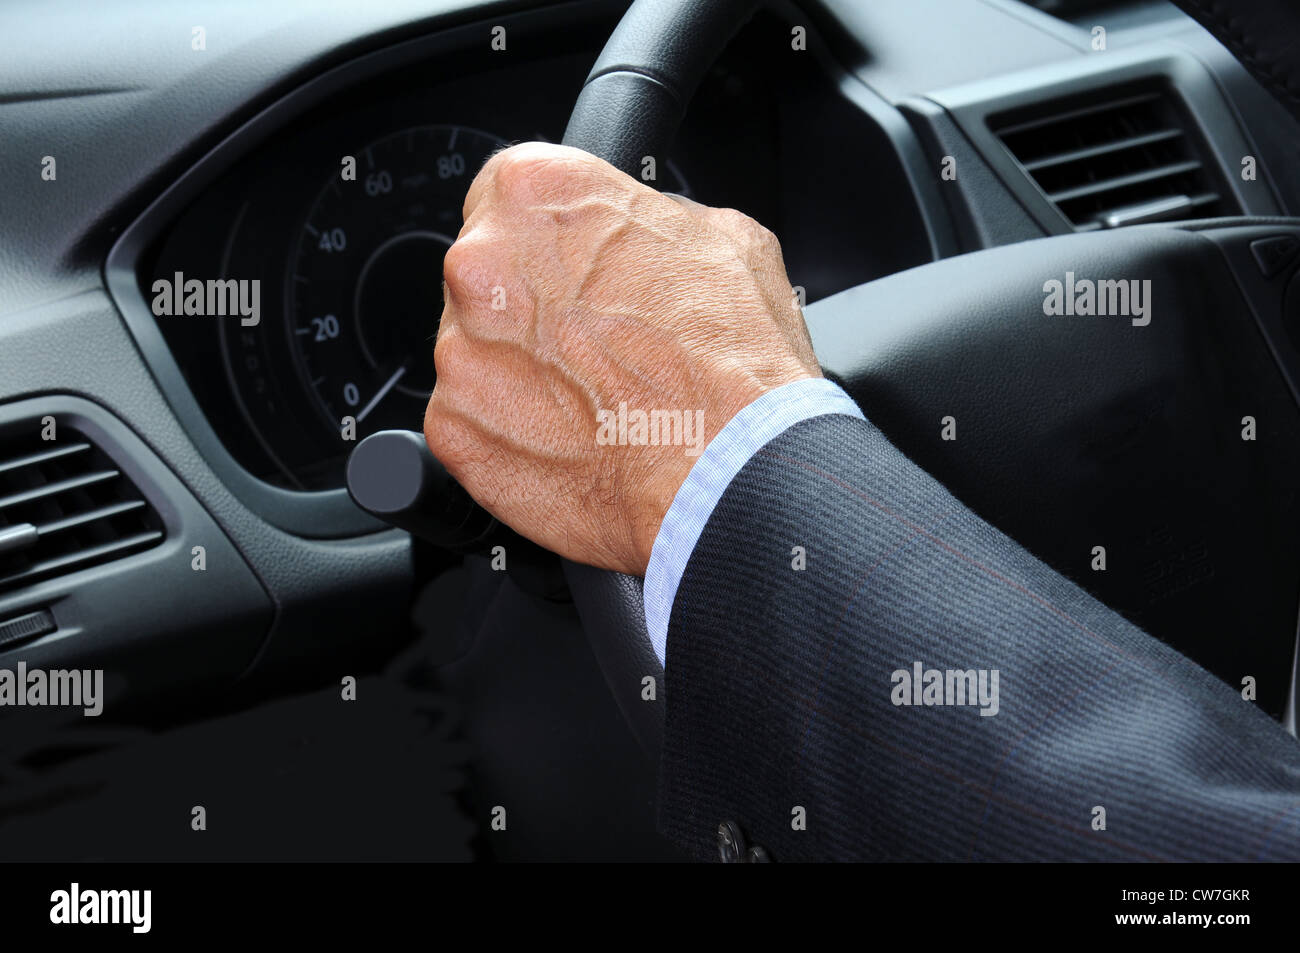 Nahaufnahme eines Mannes Hand hielt sich an das Lenkrad seines Wagens. Querformat. Auto und Fahrer sind unkenntlich. Stockfoto